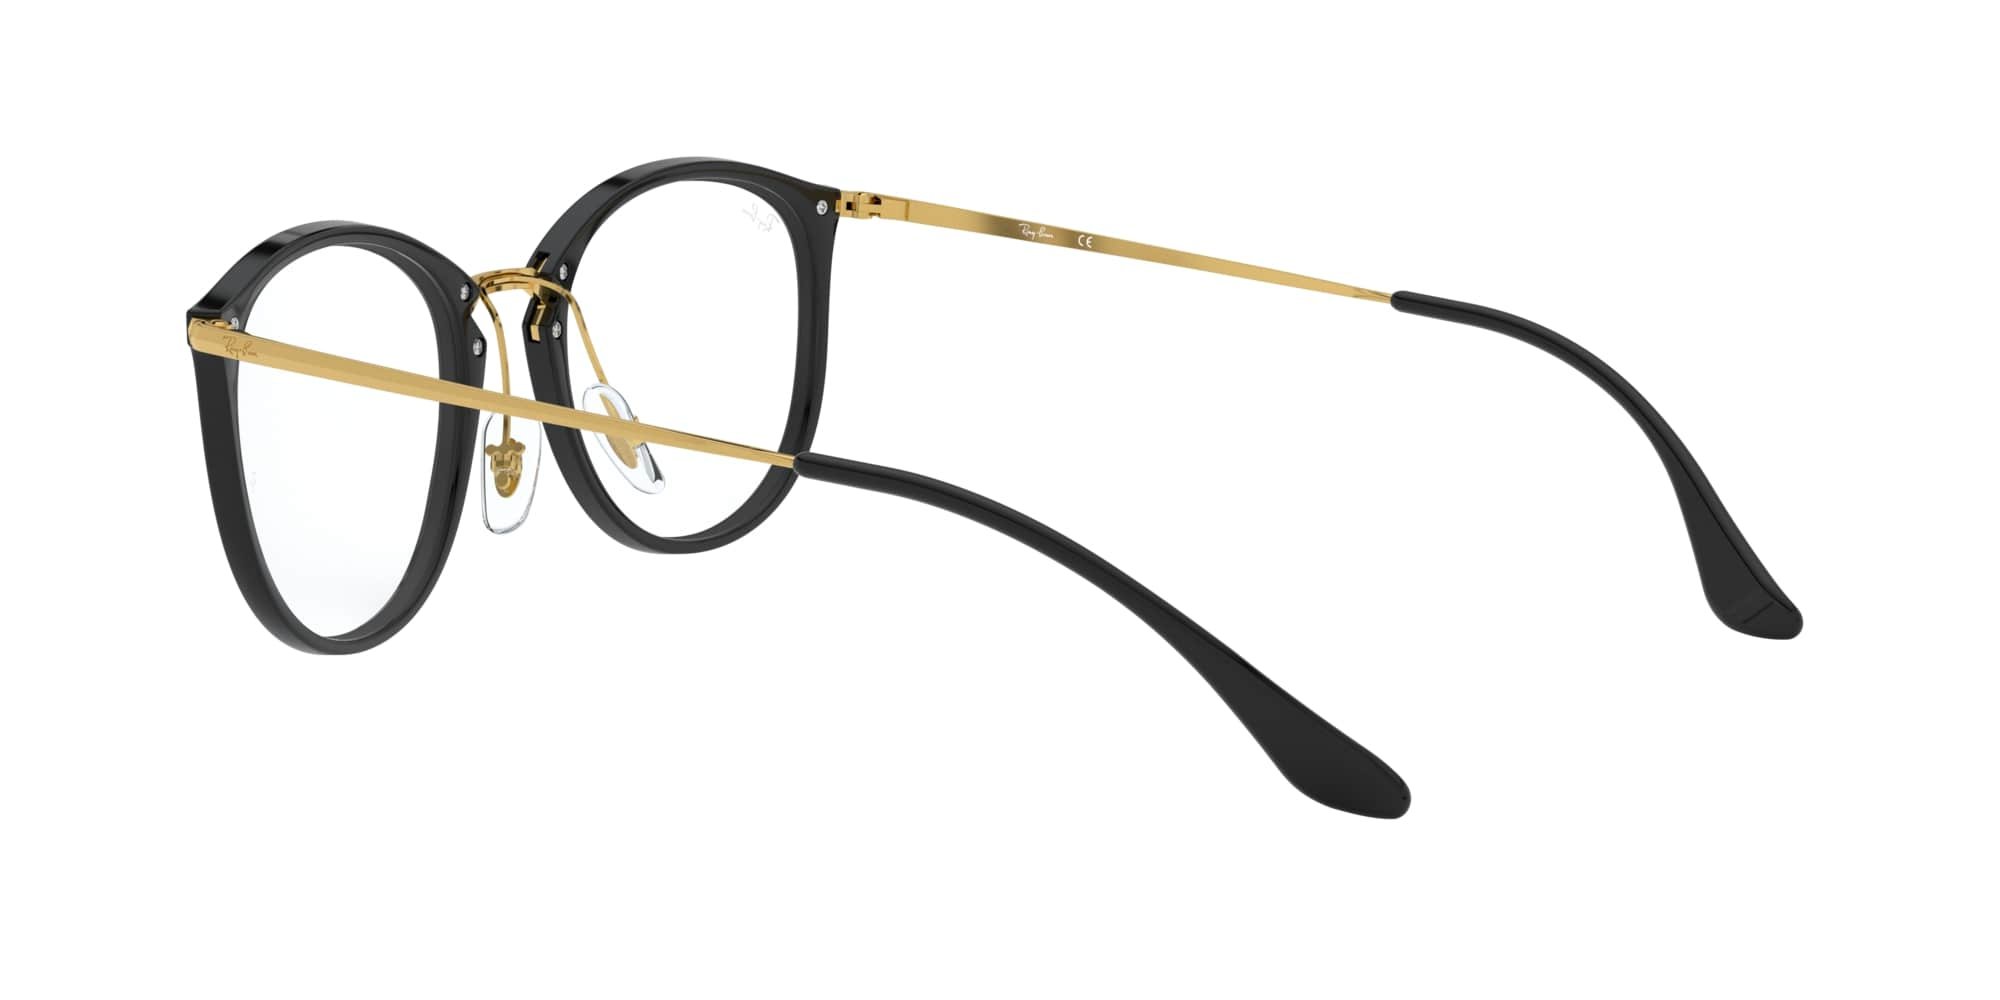 Das Bild zeigt die Korrektionsbrille RX7140 2000 von der Marke Ray Ban in schwarz/gold.